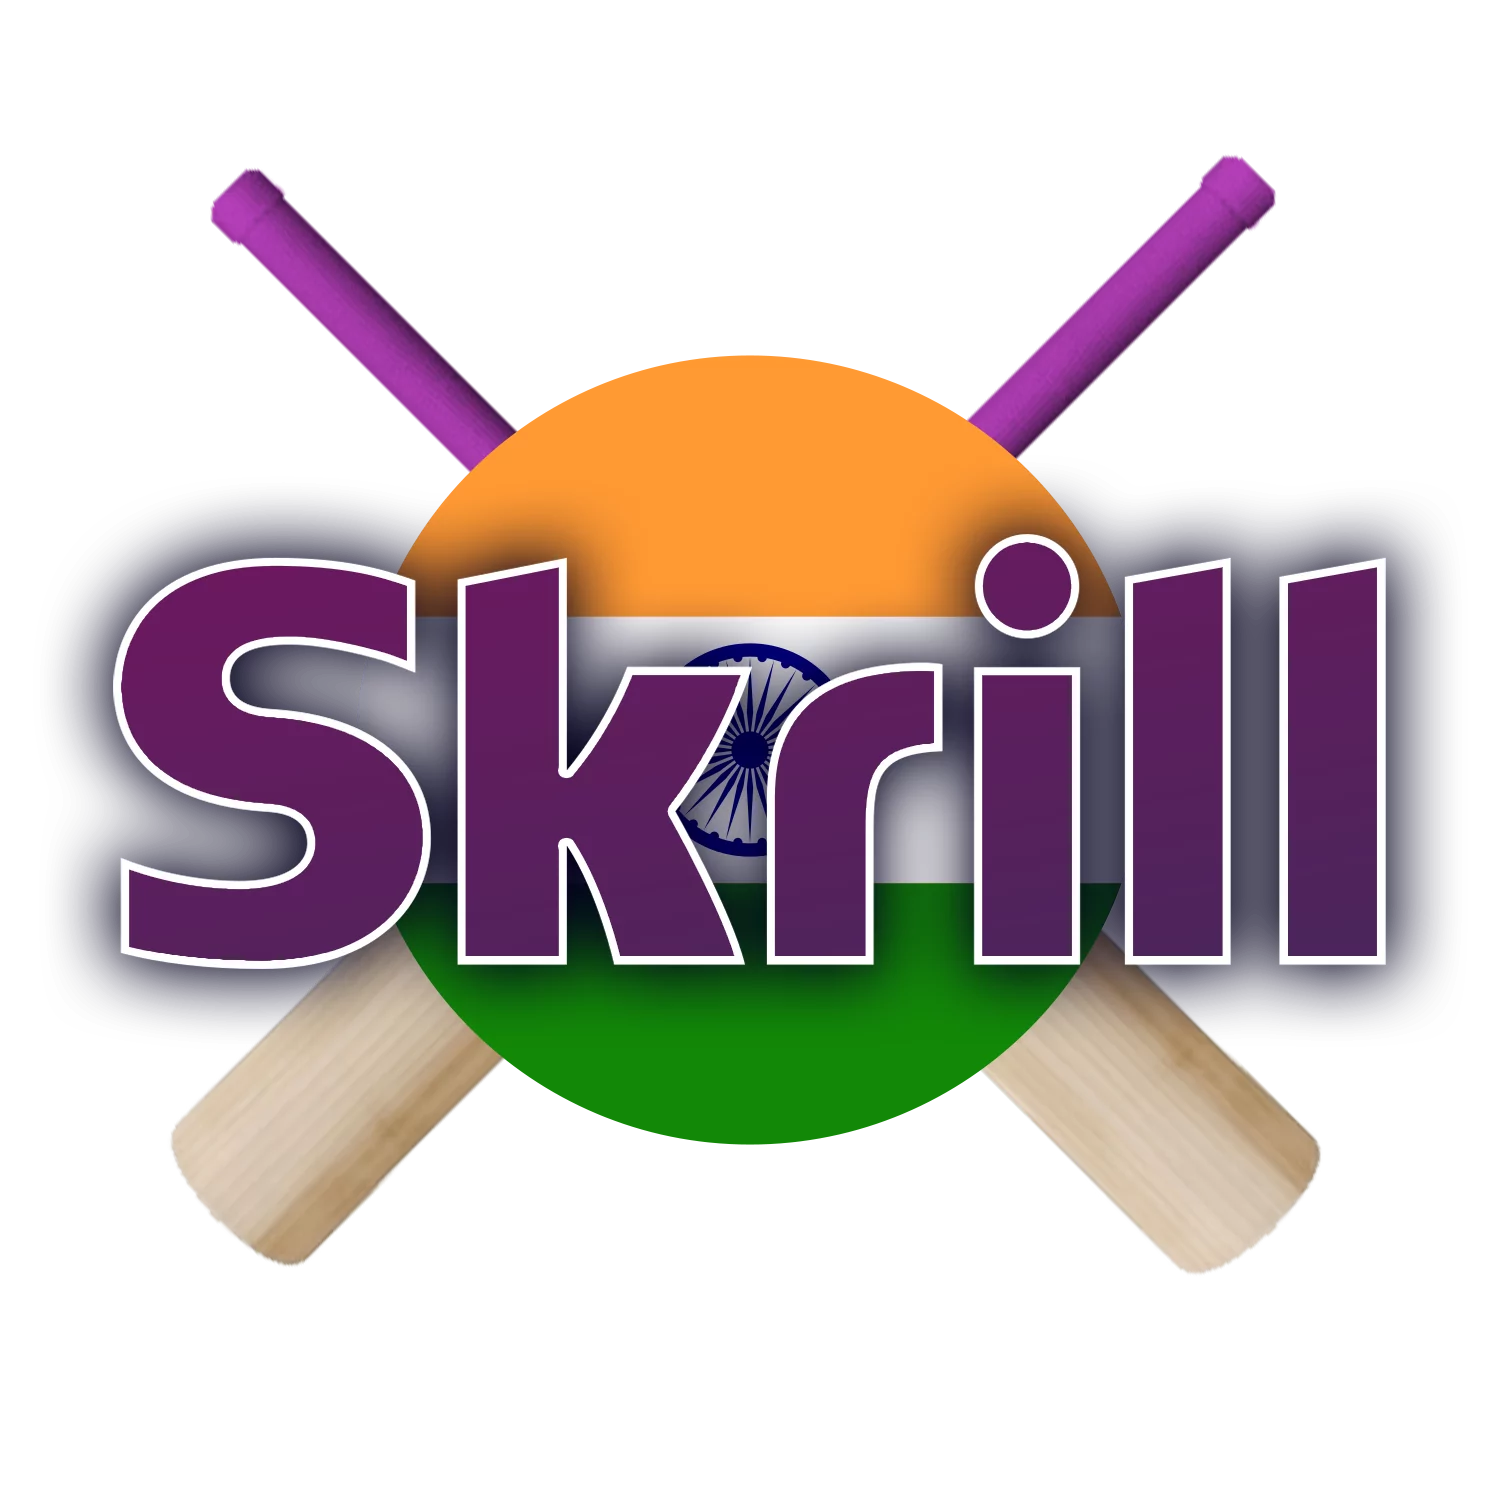 Skrill सबसे लोकप्रिय और फैल जमा विधियों में से एक है।